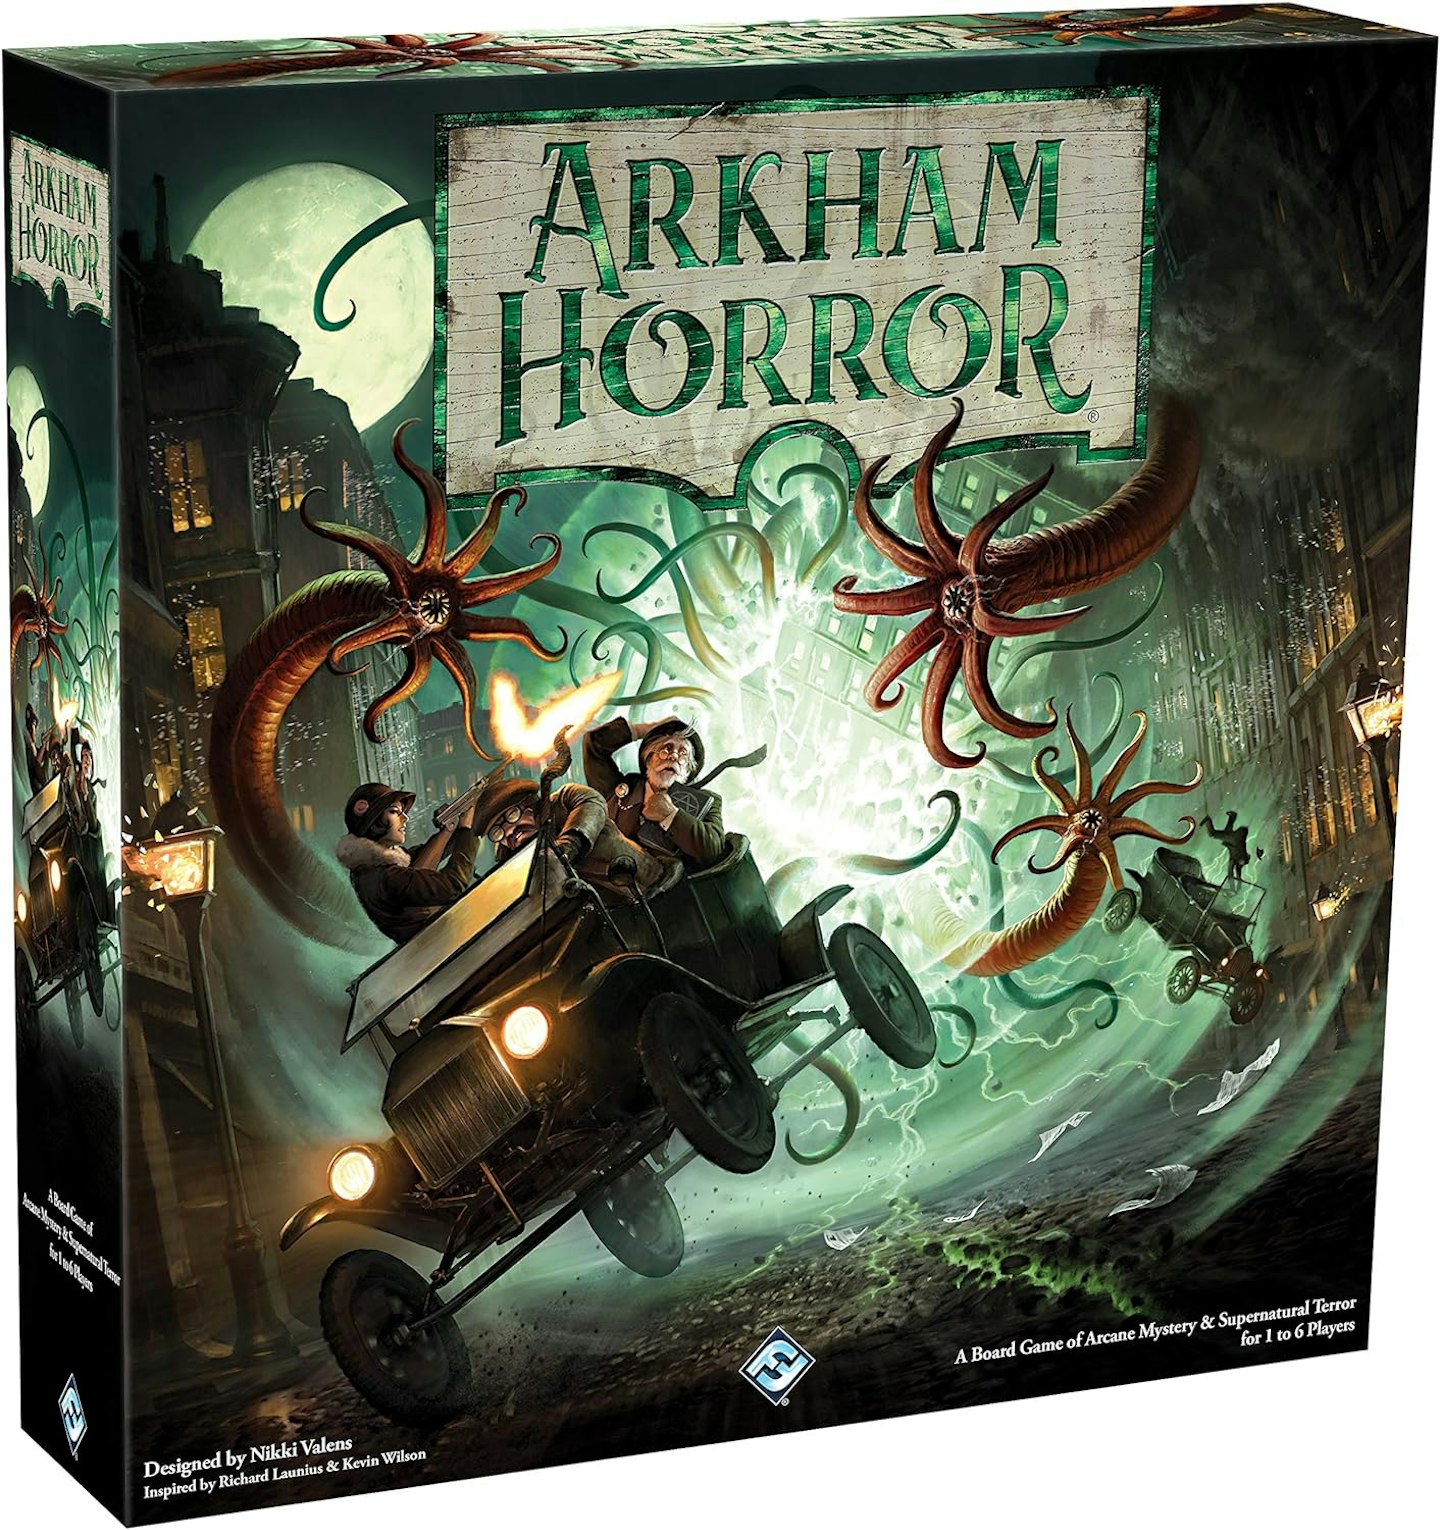 Arkham Horror game